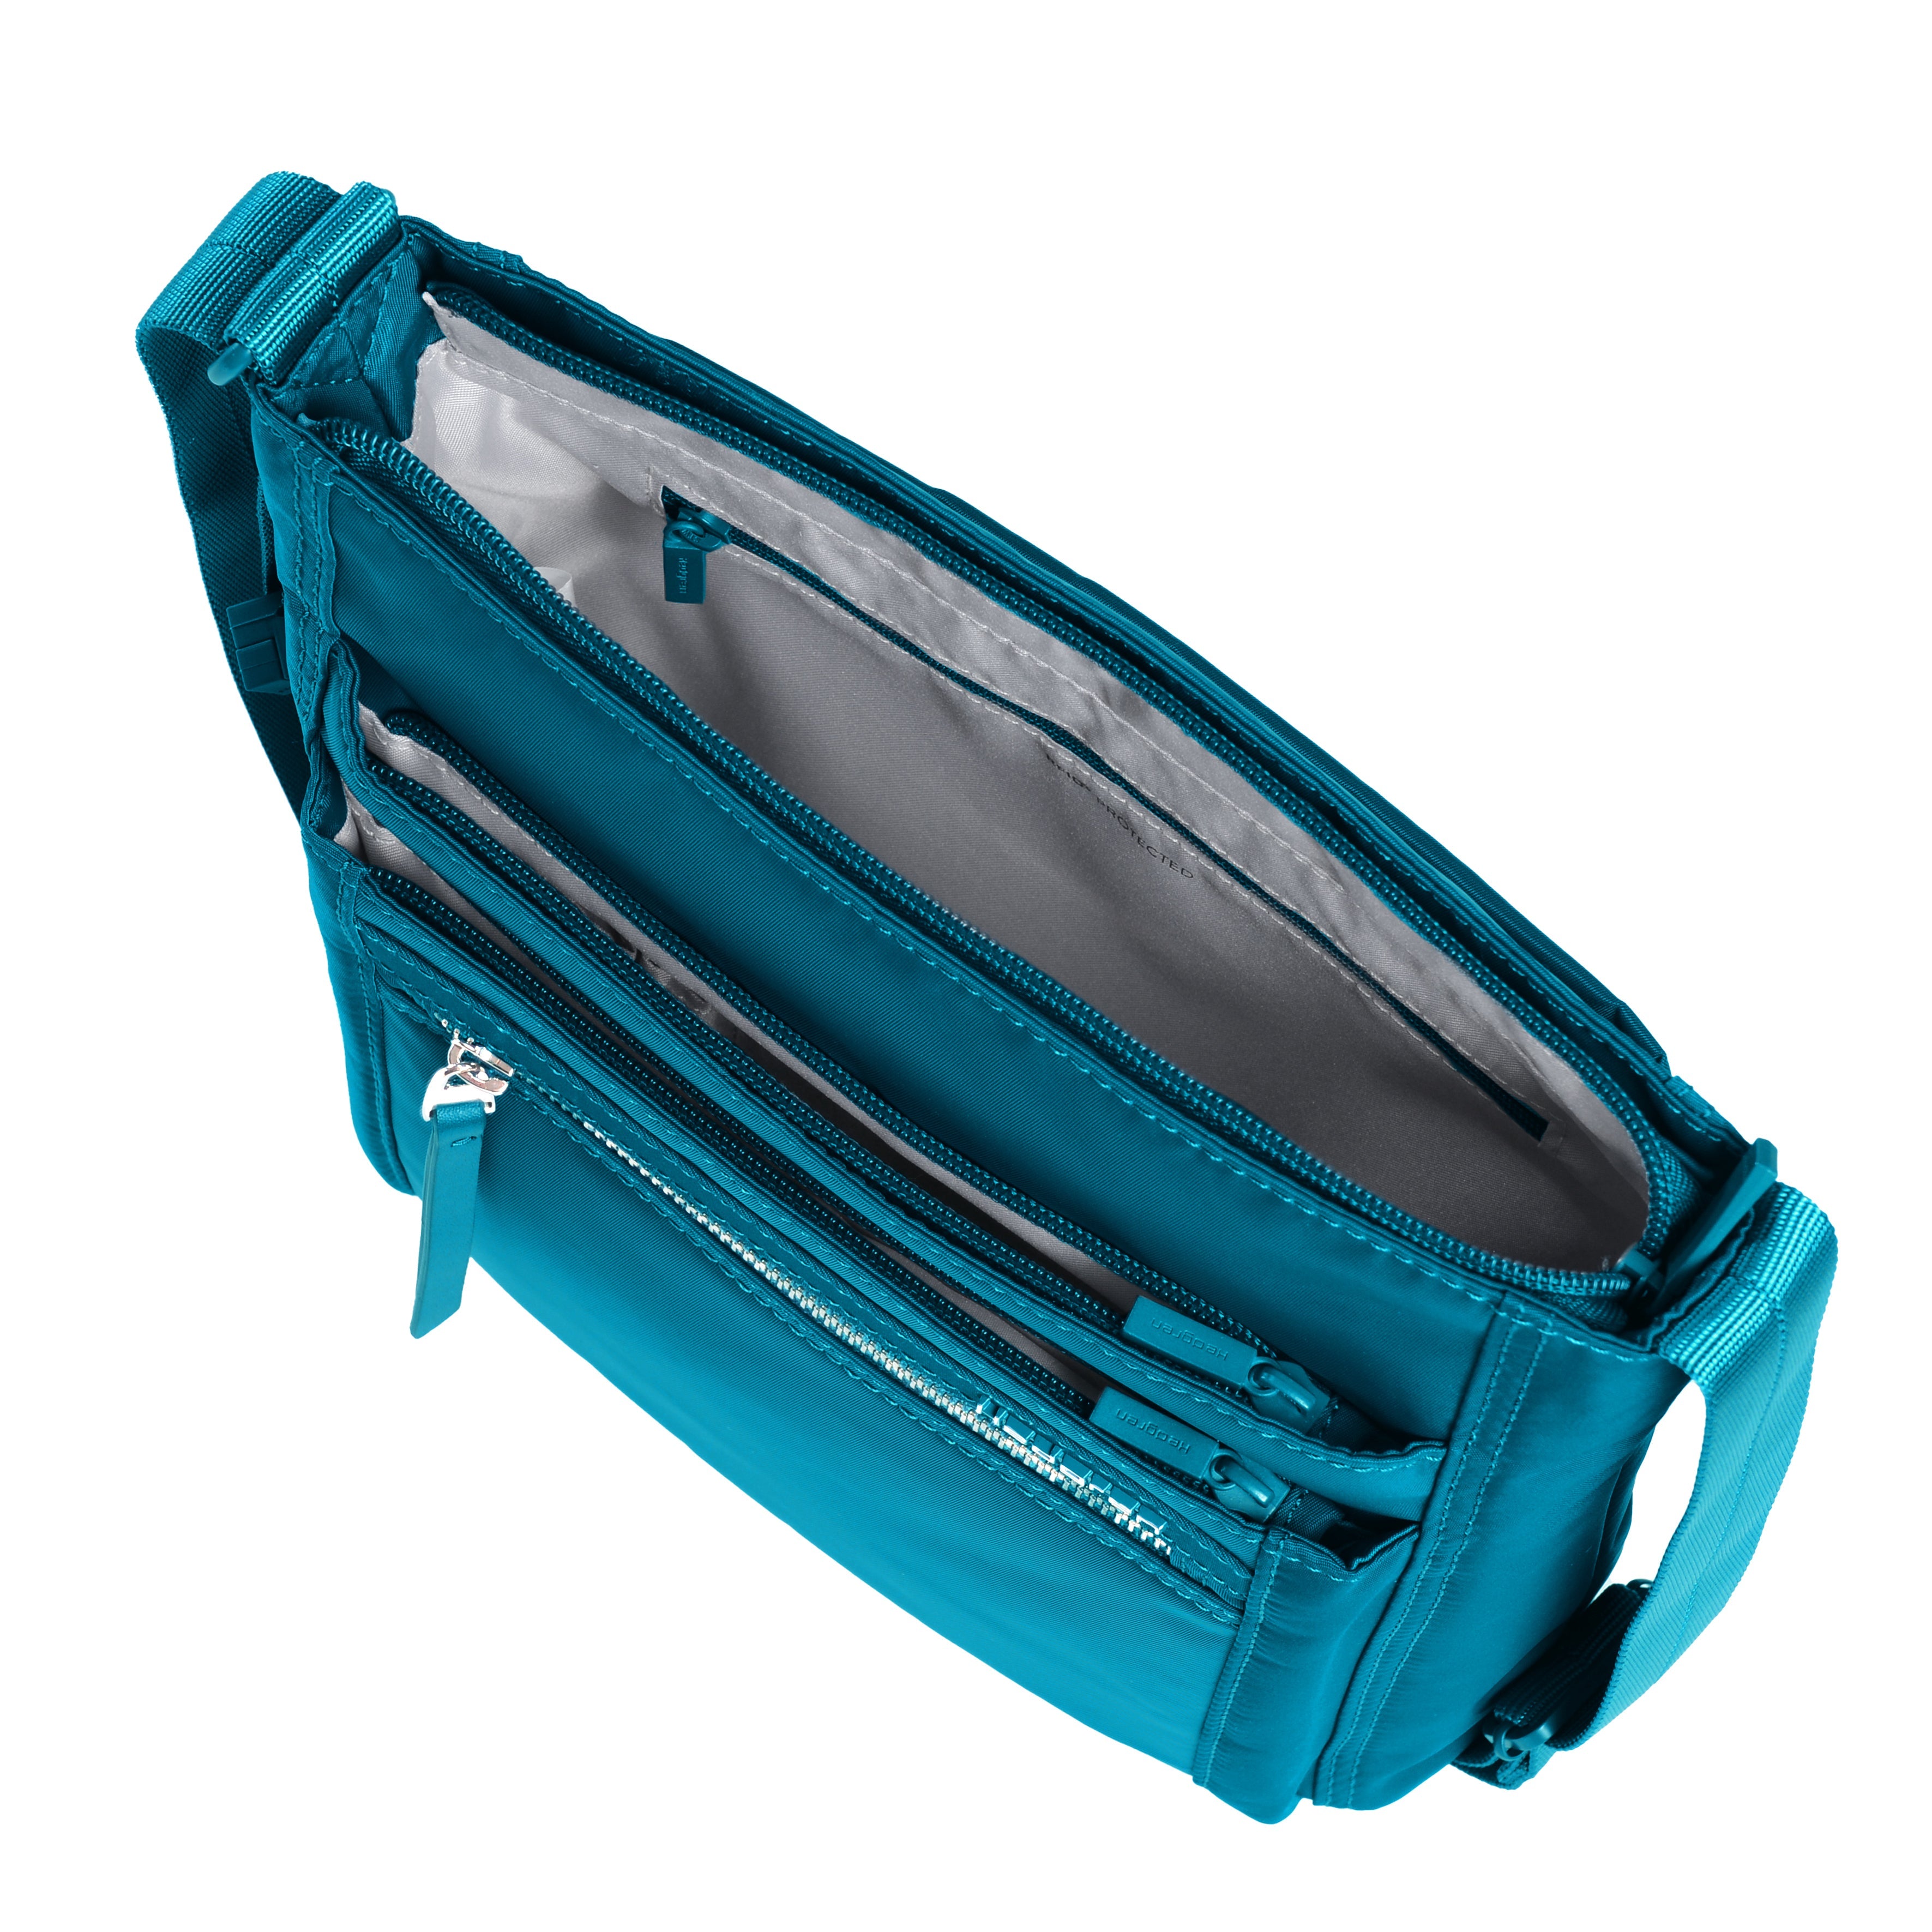 Hedgren Orva RFID Shoulder Bag Oceanic Blue